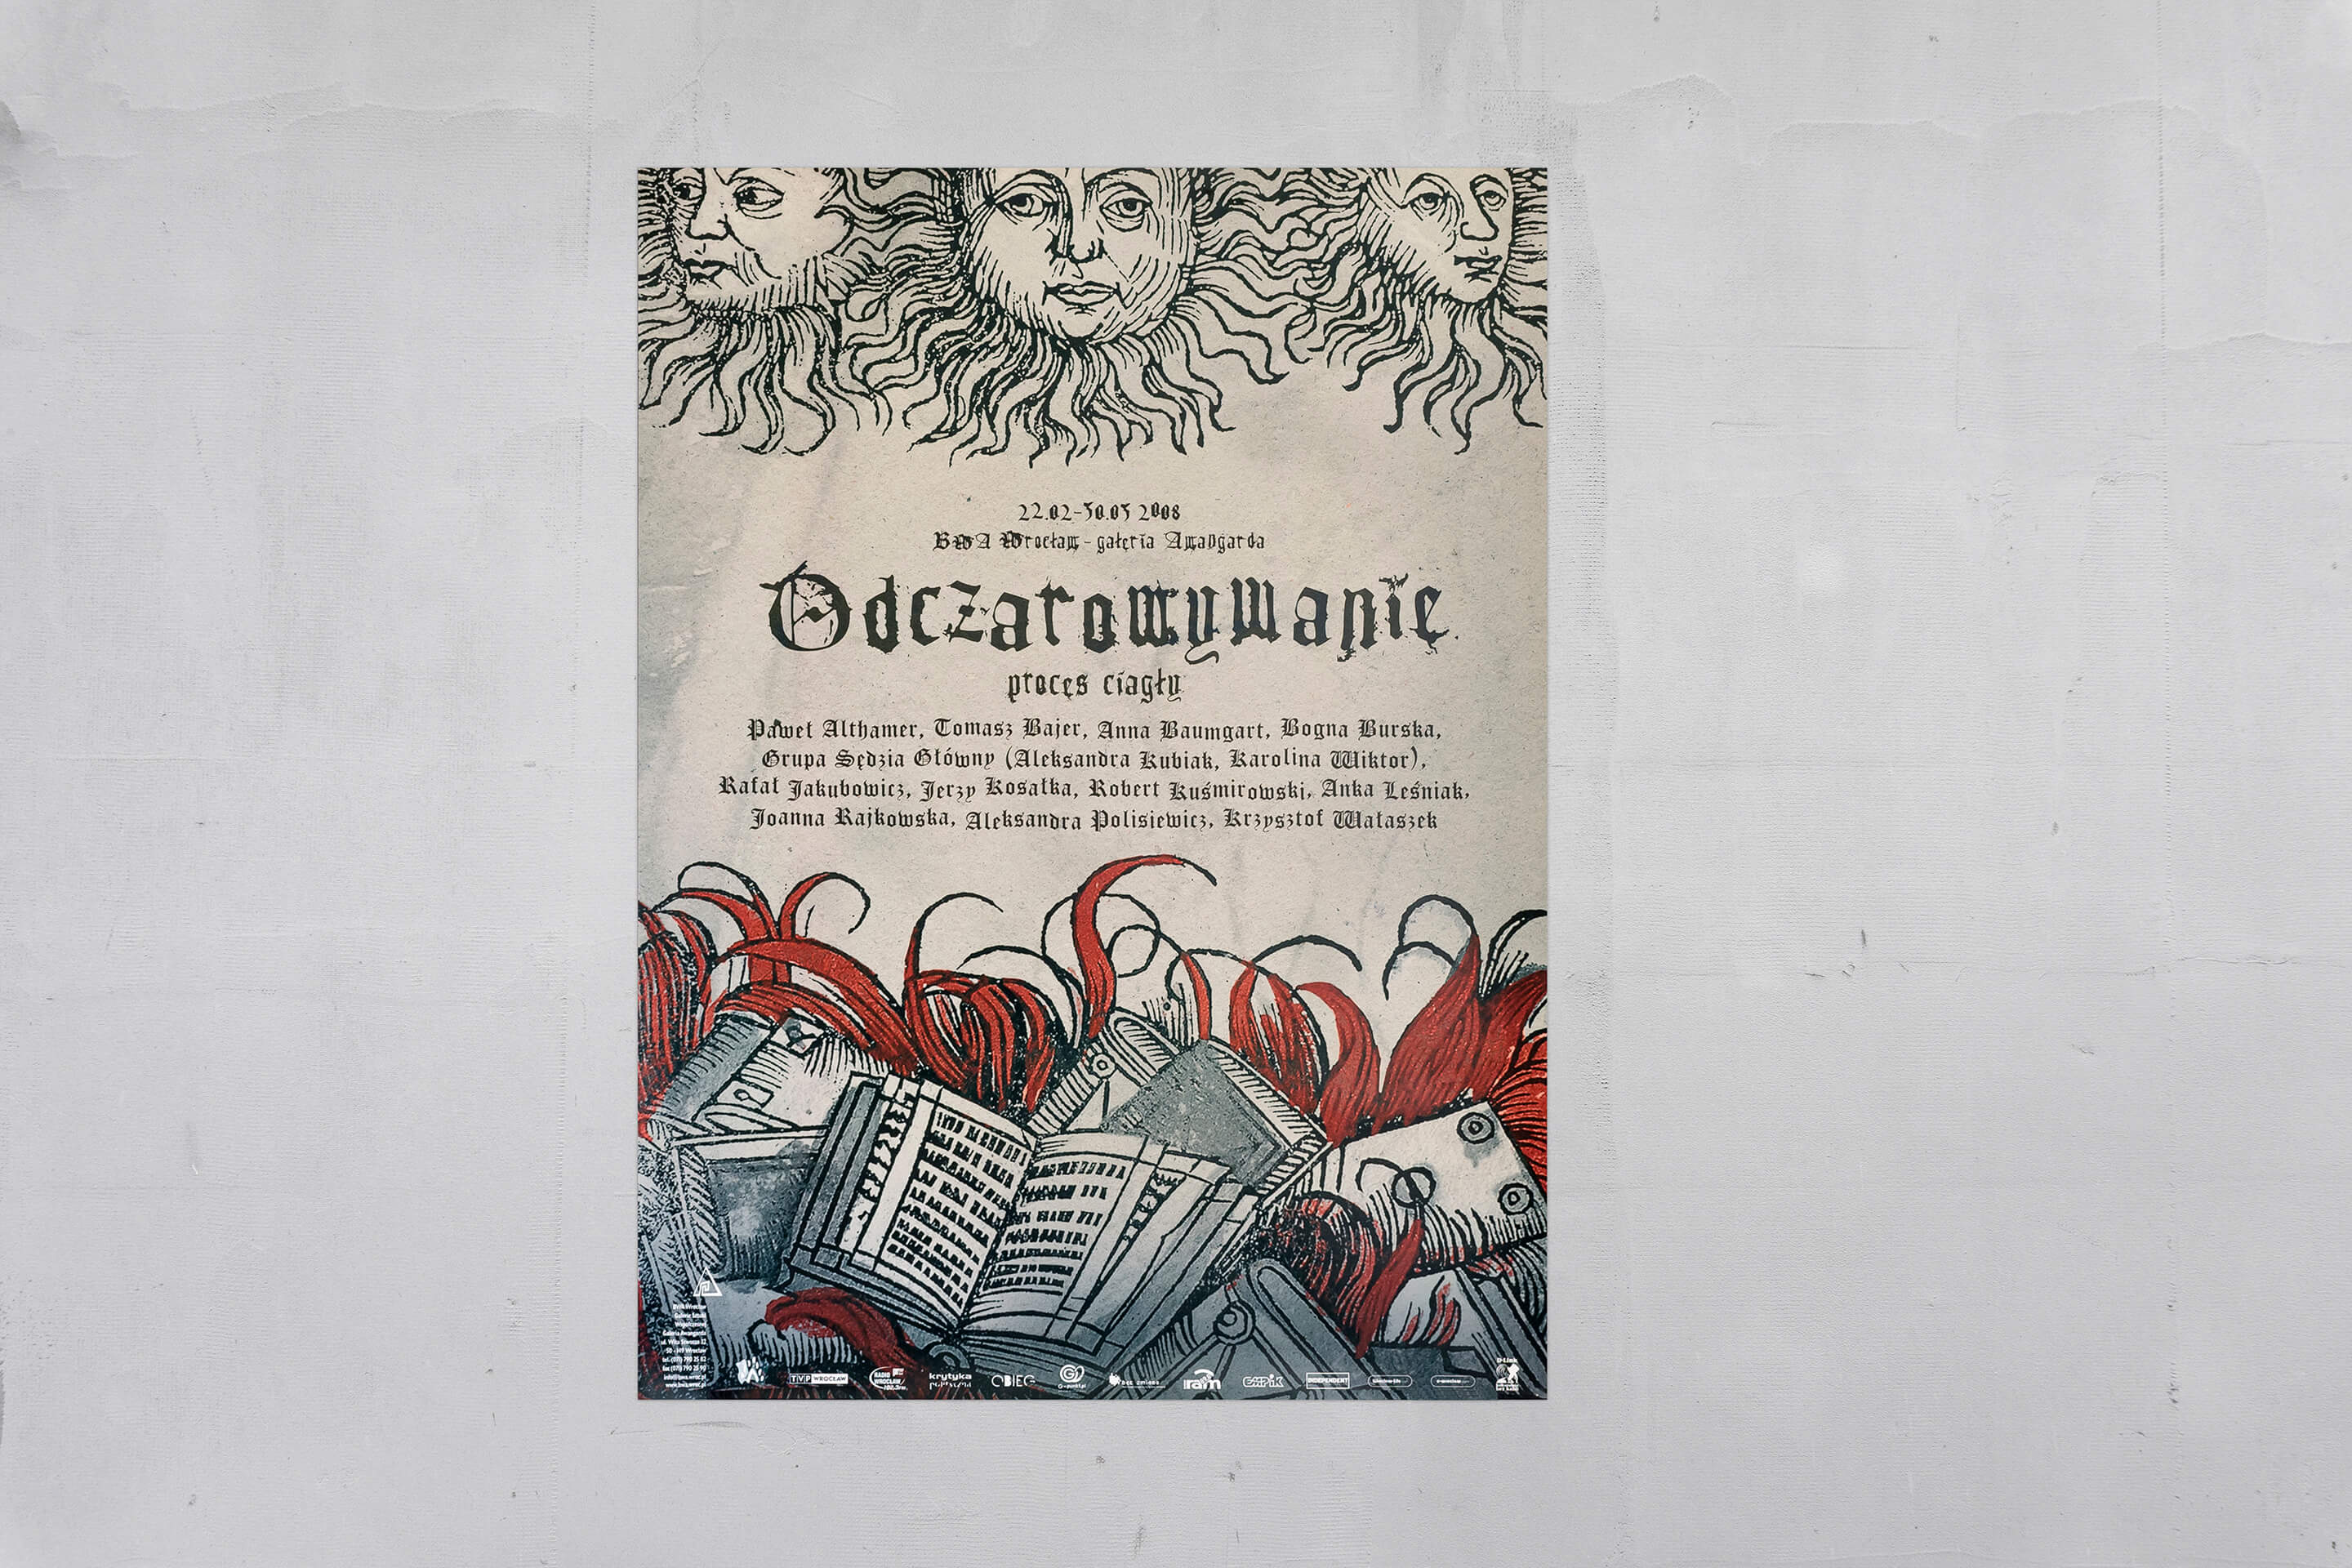 Na szym tle plakat wystawy Odczarowywanie – na górze trzy słońca, na dole księga w płomieniach.